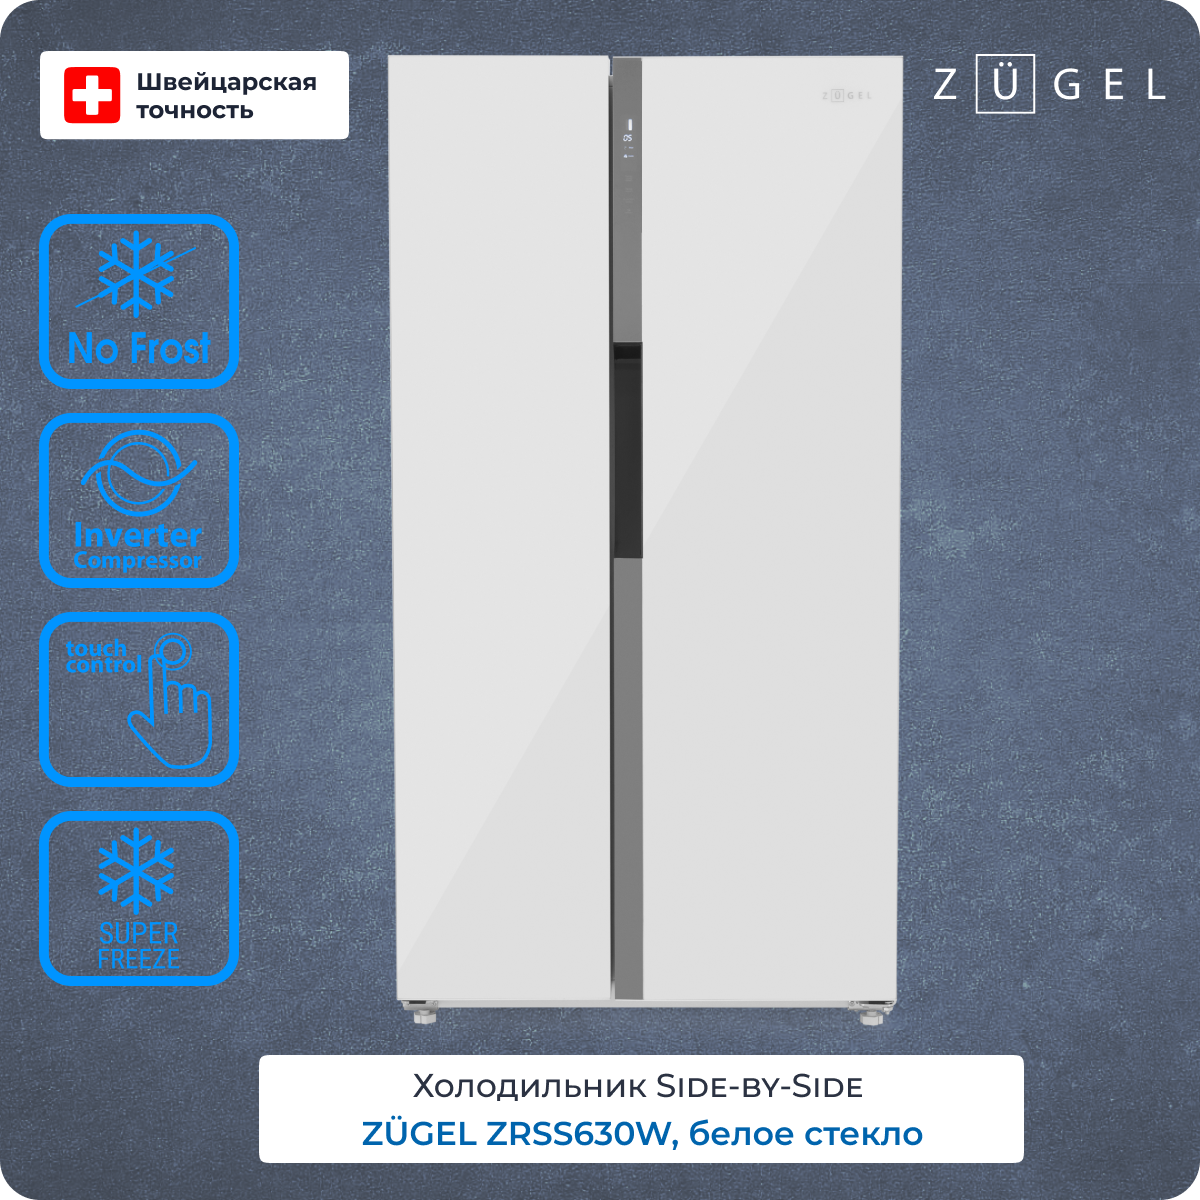 Холодильник ZUGEL ZRSS630W белый холодильник zugel zrfd361w белый